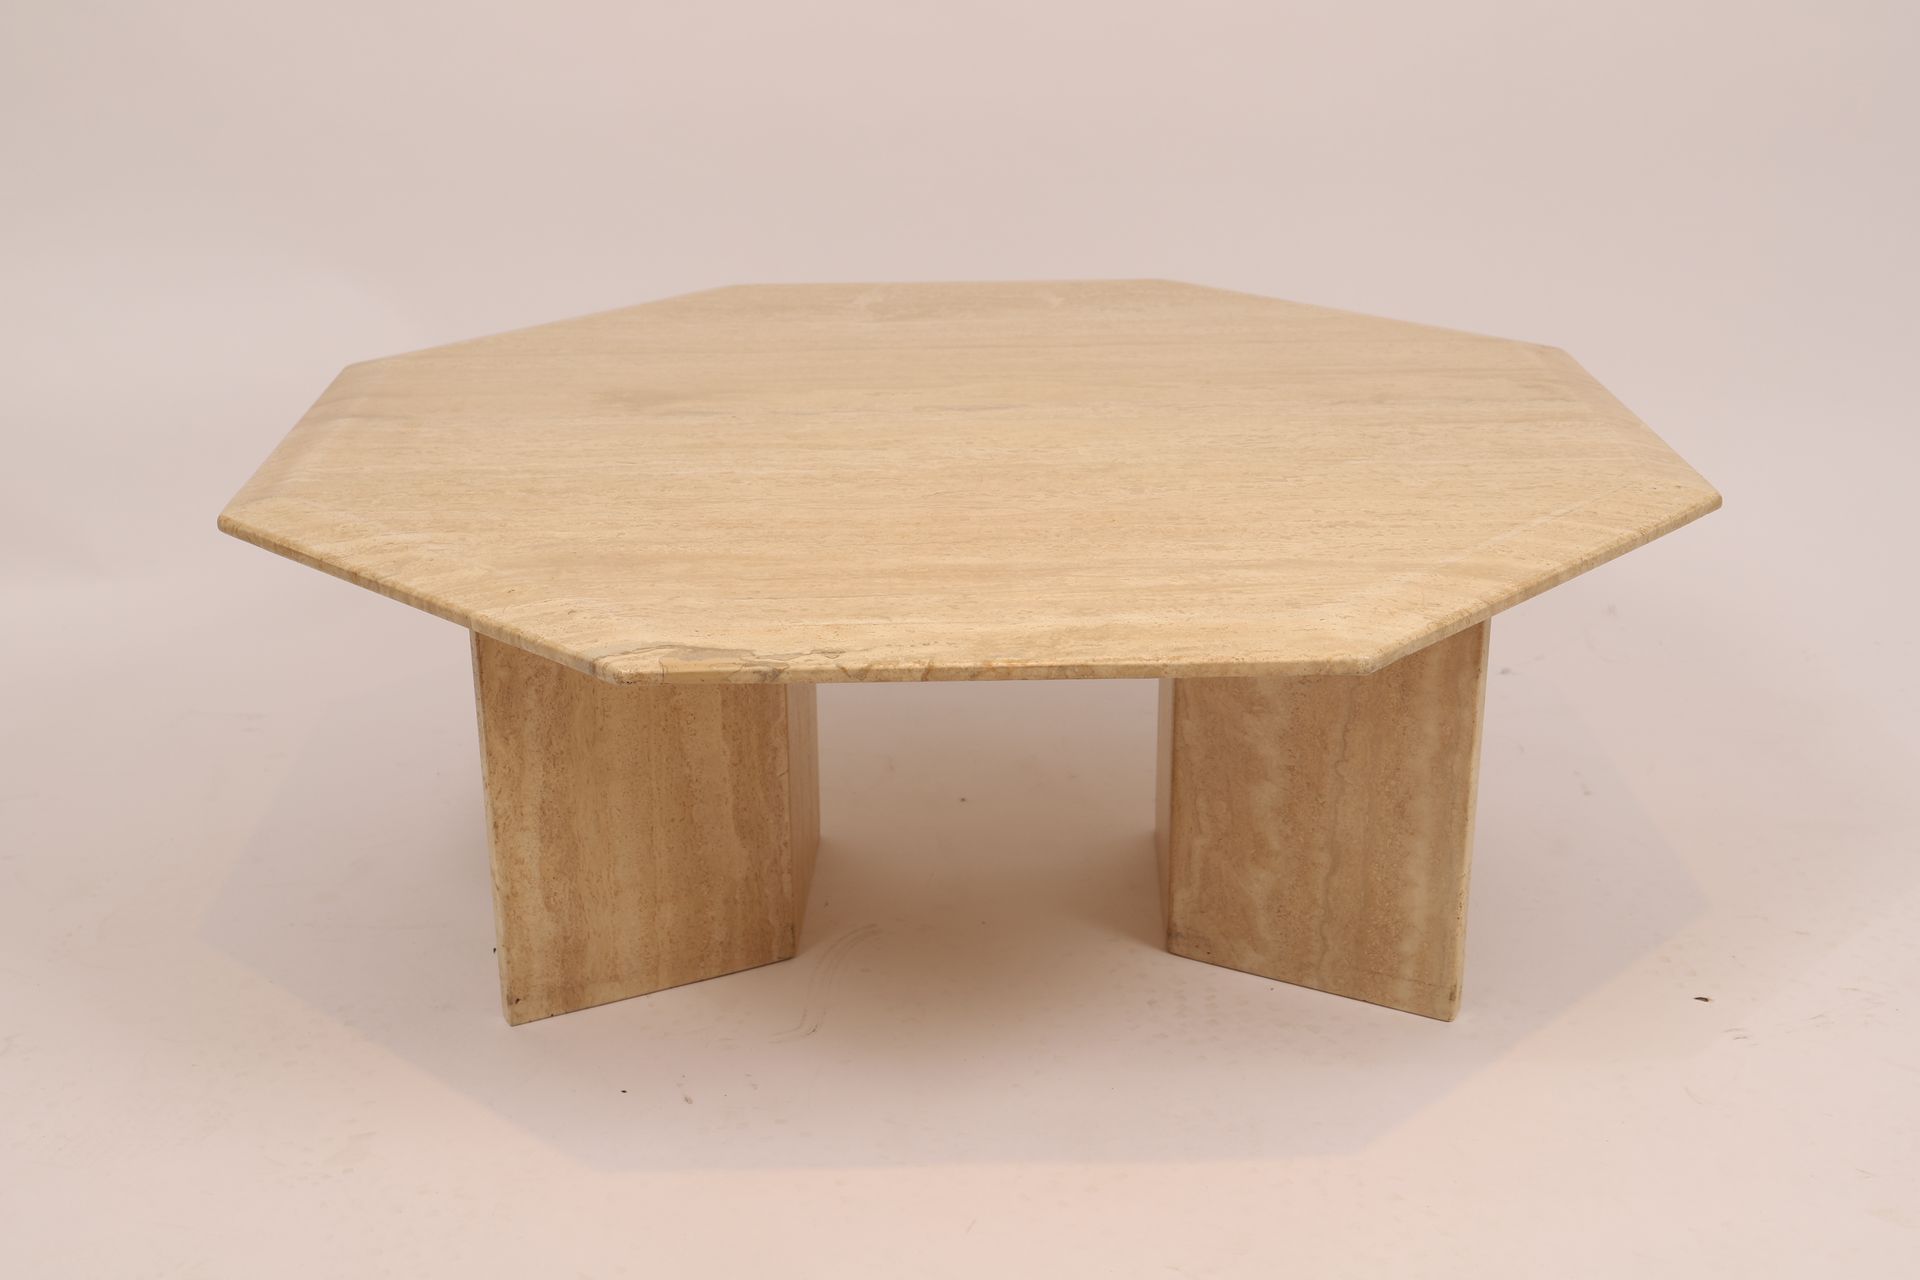 Null 矮桌

洞石，八角形顶部，放置在一个双层底座上。

20世纪时期

尺寸：高：36；深：95